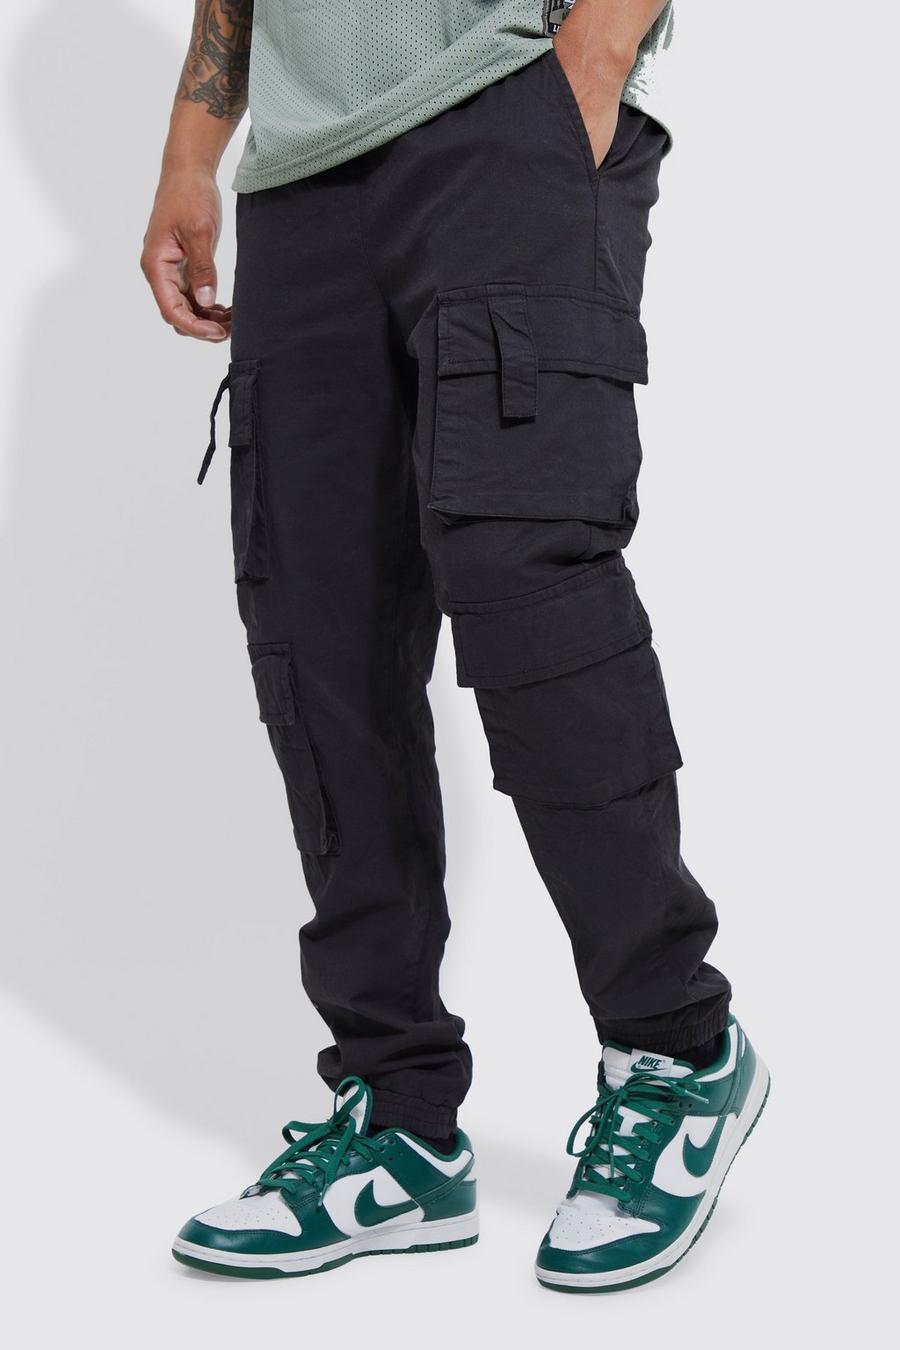 Pantalón deportivo ajustado con multibolsillos cargo y cintura elástica, Black